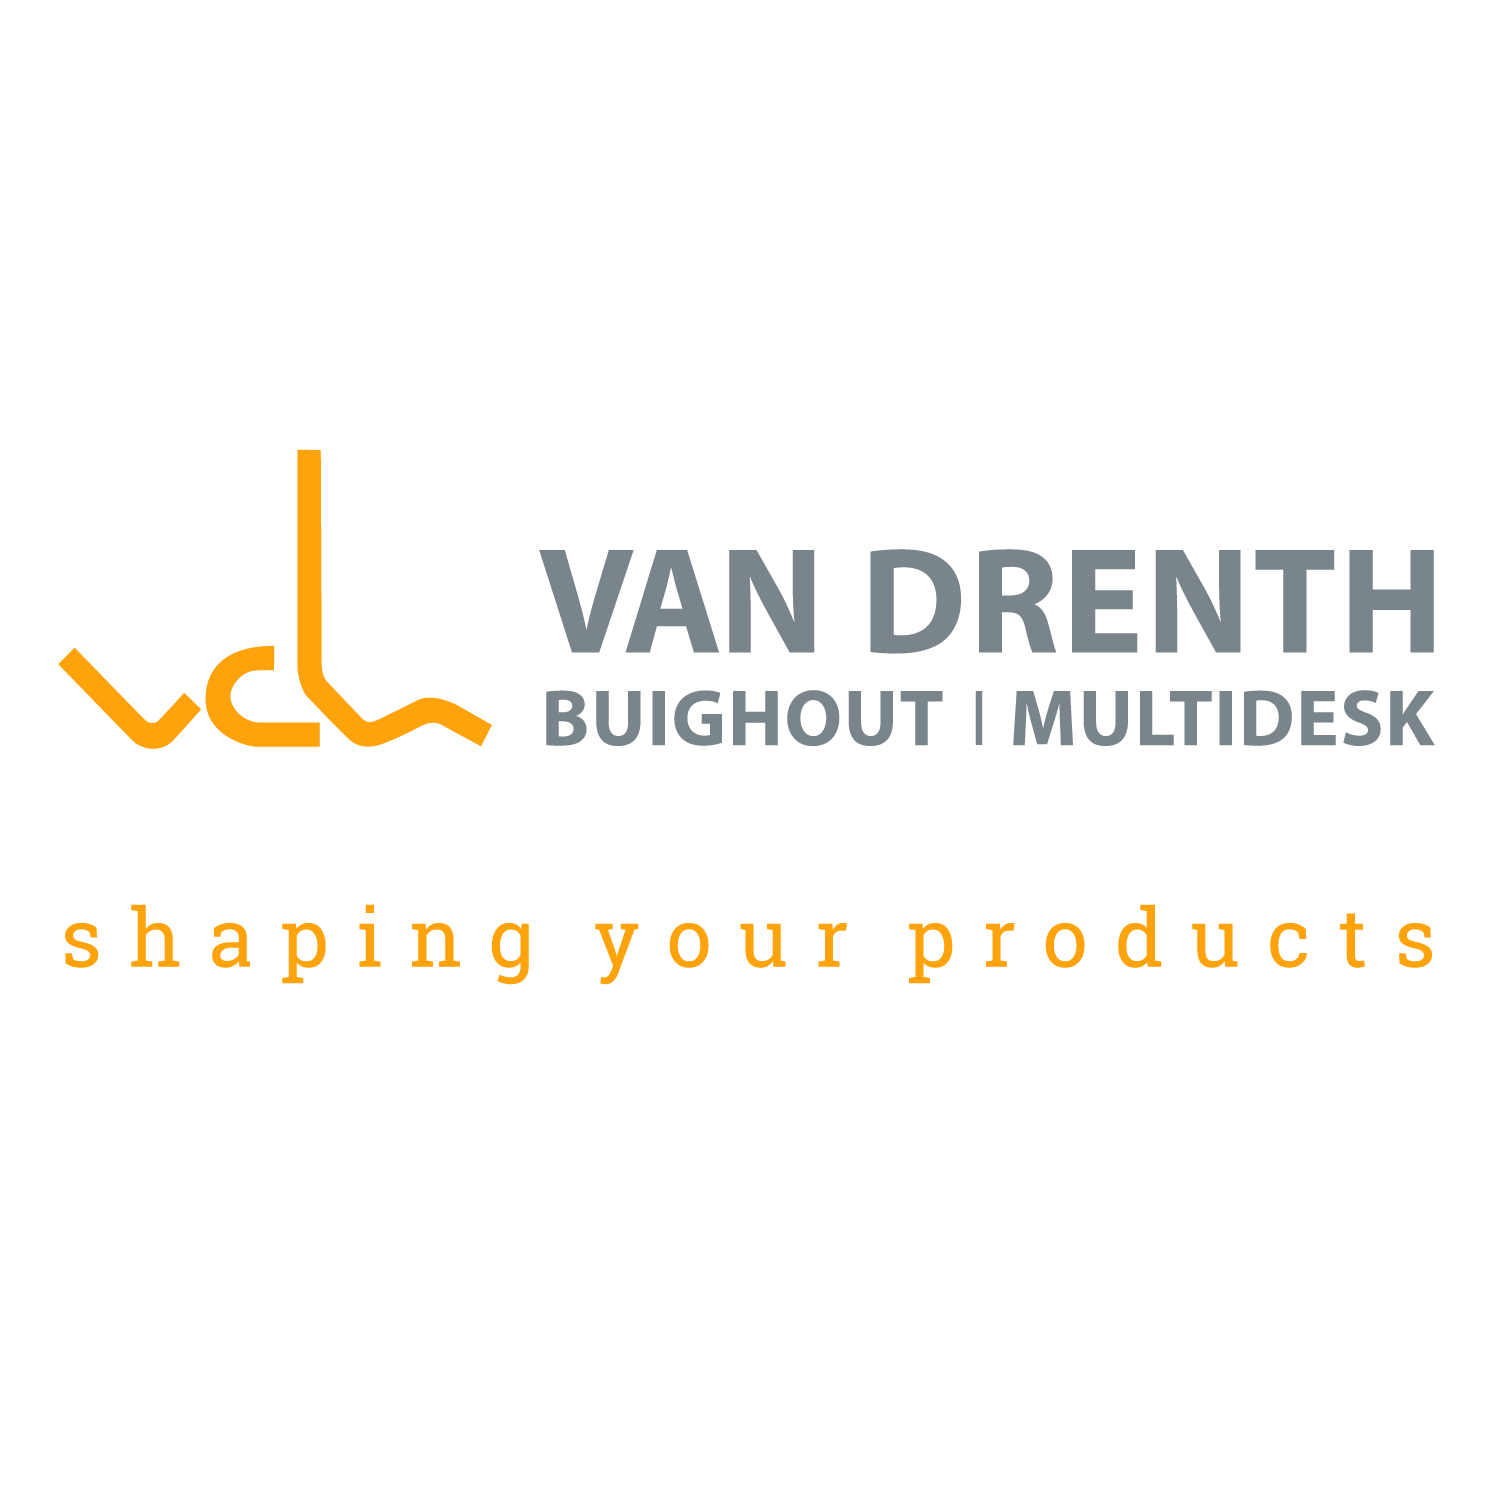 Van Drenth Buighout